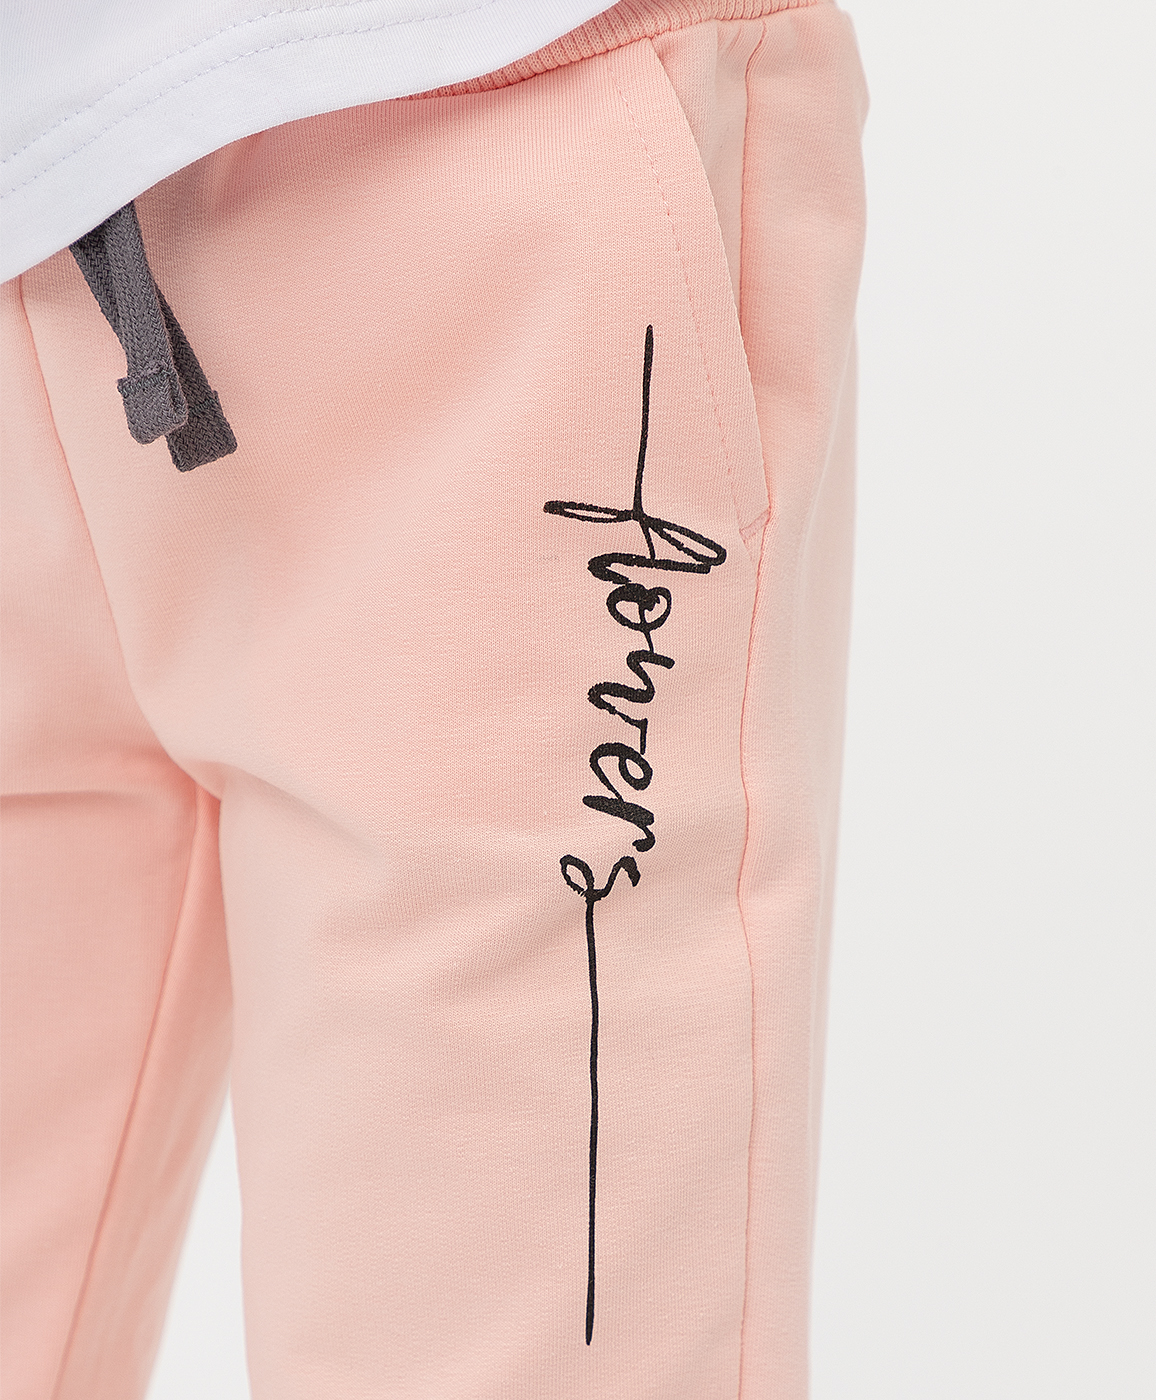 Розовые брюки Button Blue 121BBGMC56016300, размер 122, цвет розовый на резинке - фото 4